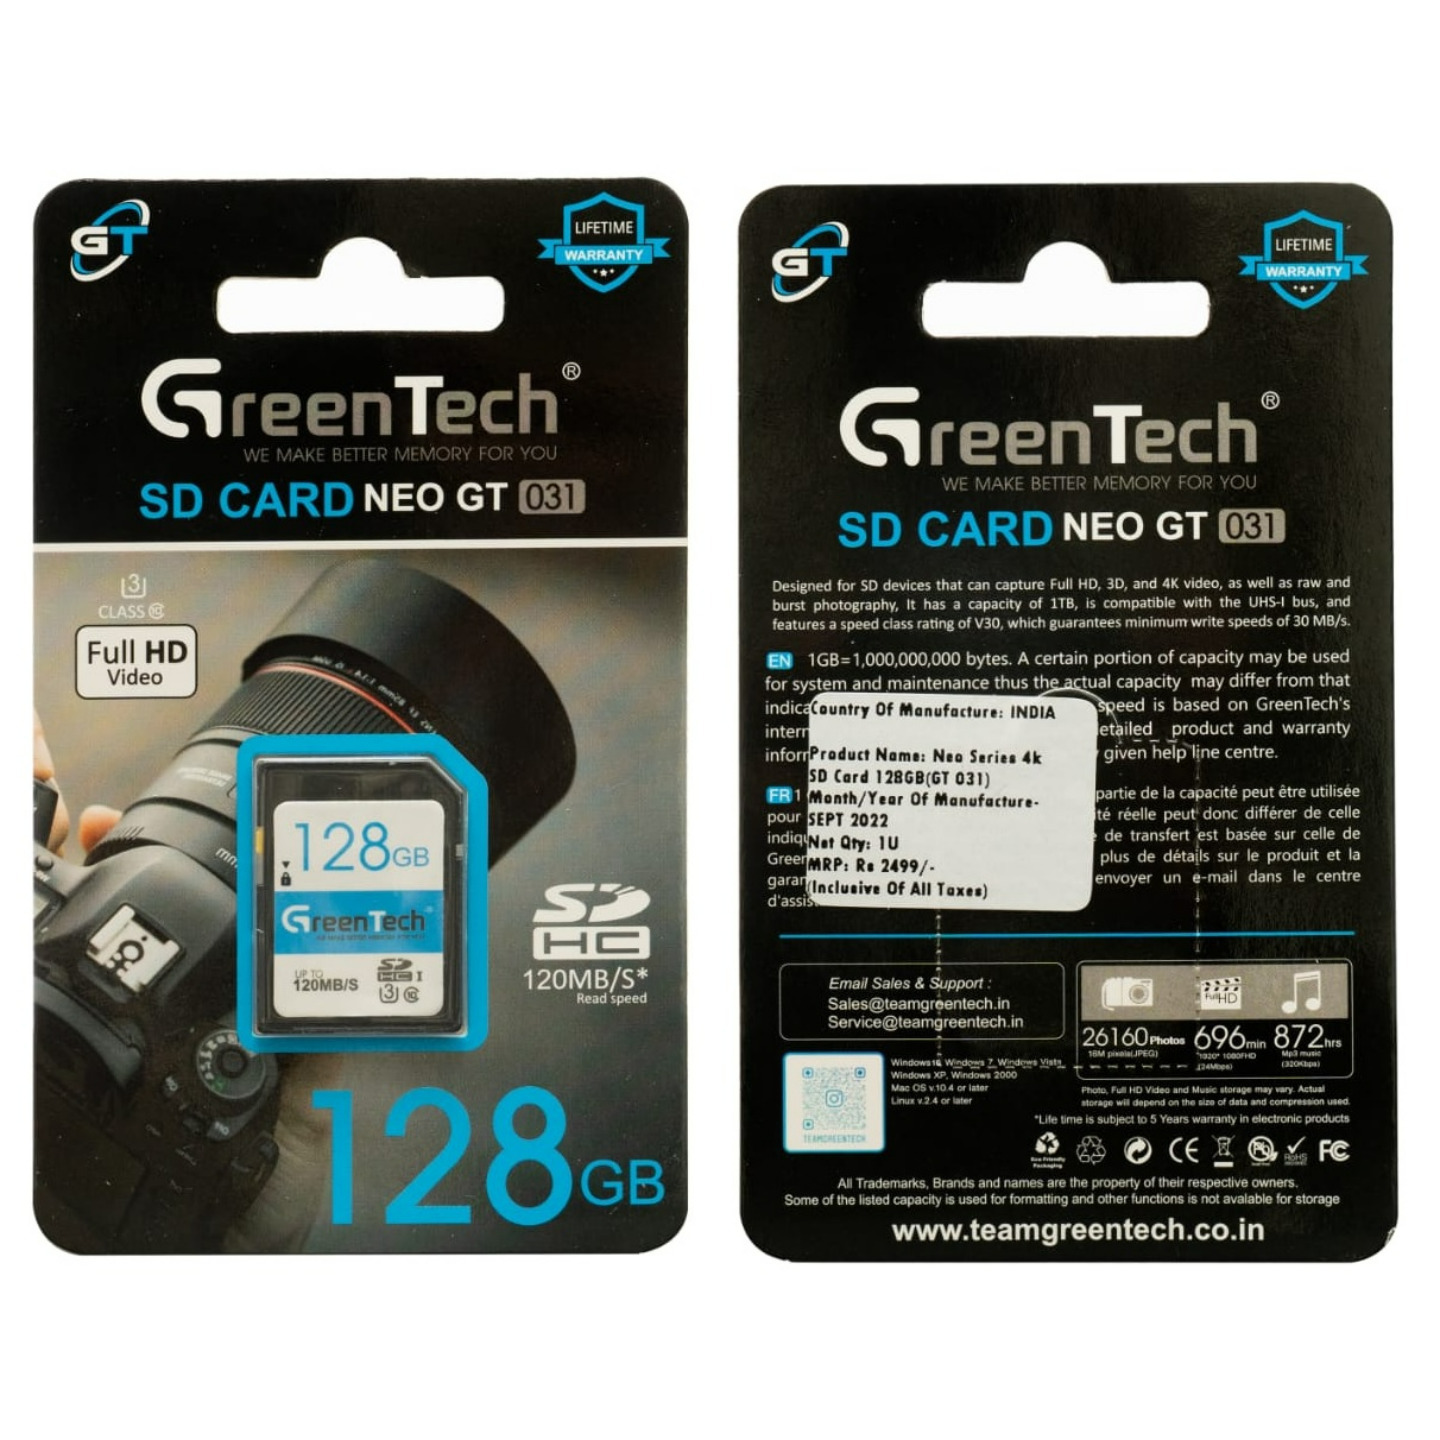 GreenTech High Speed 128 GB SD Card Model - GT-031